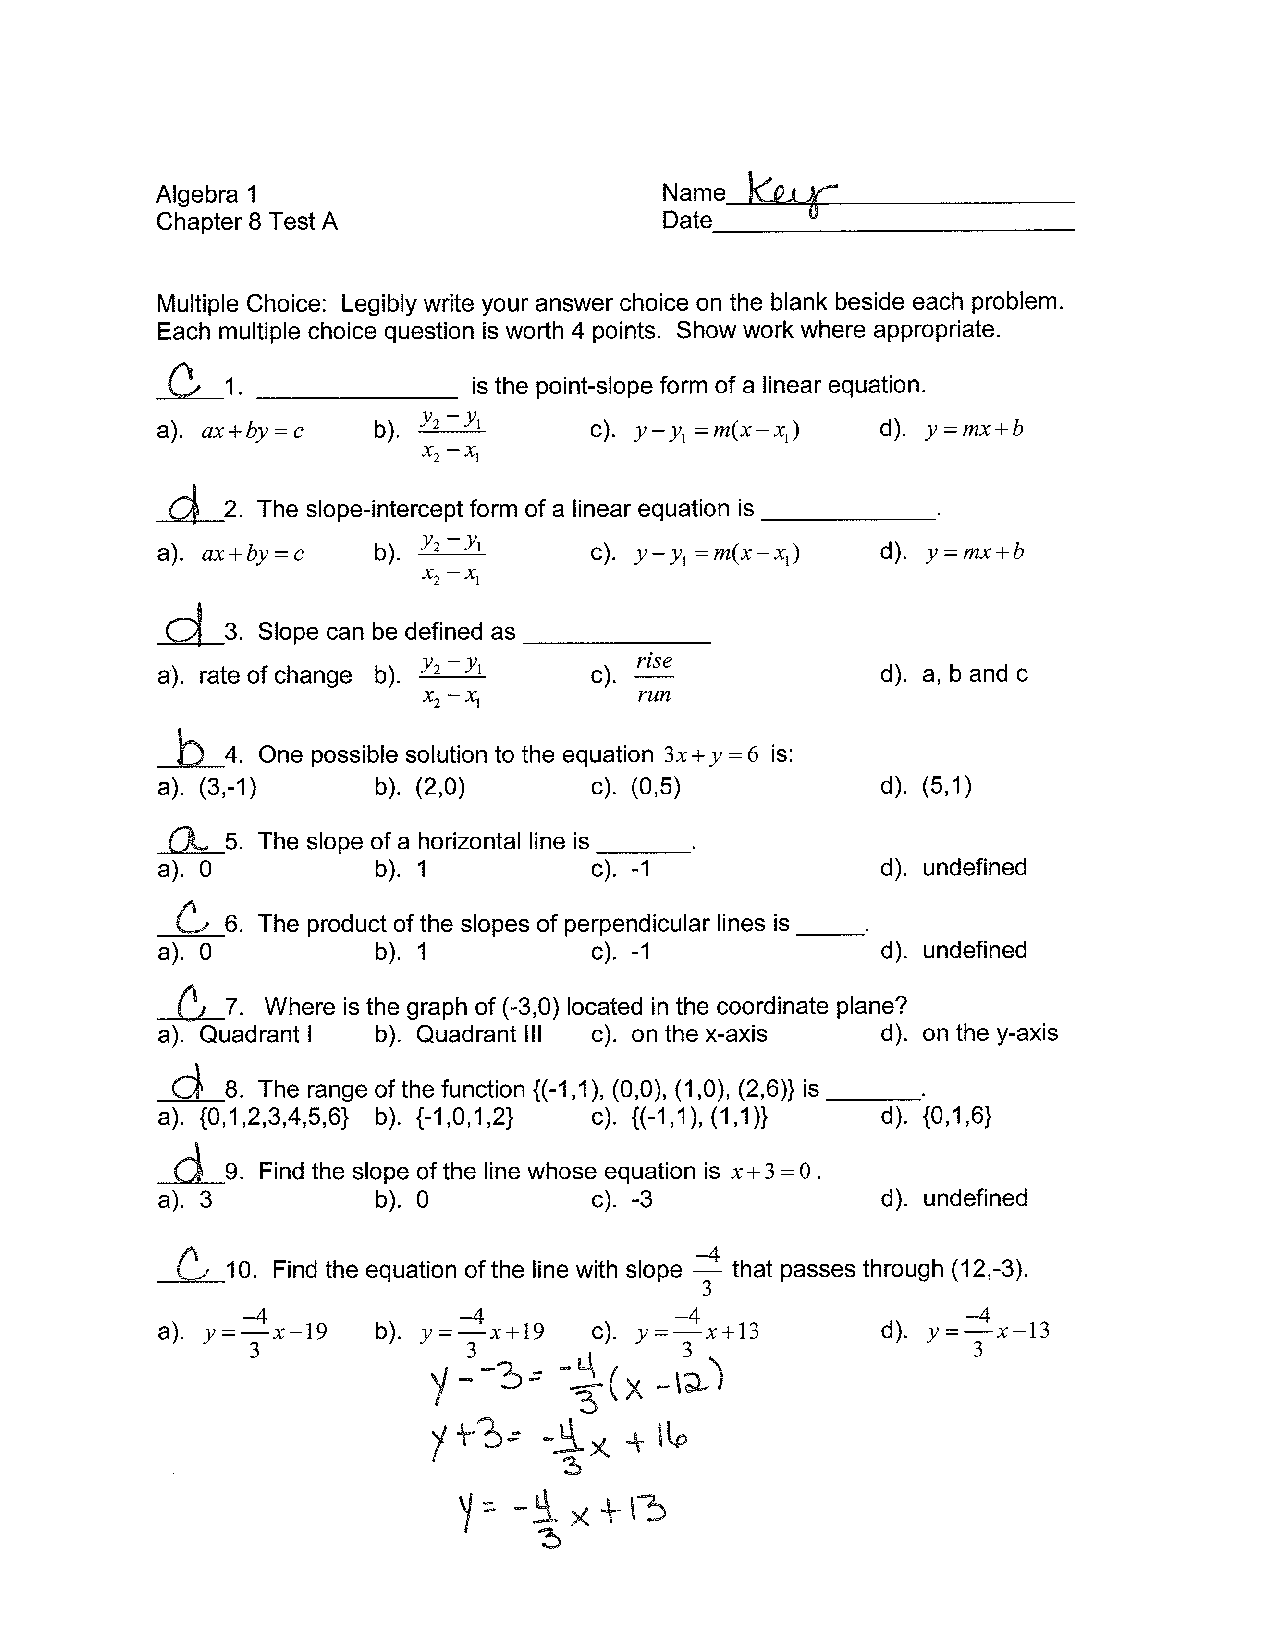 50 Printable Algebra 1 Worksheets 38